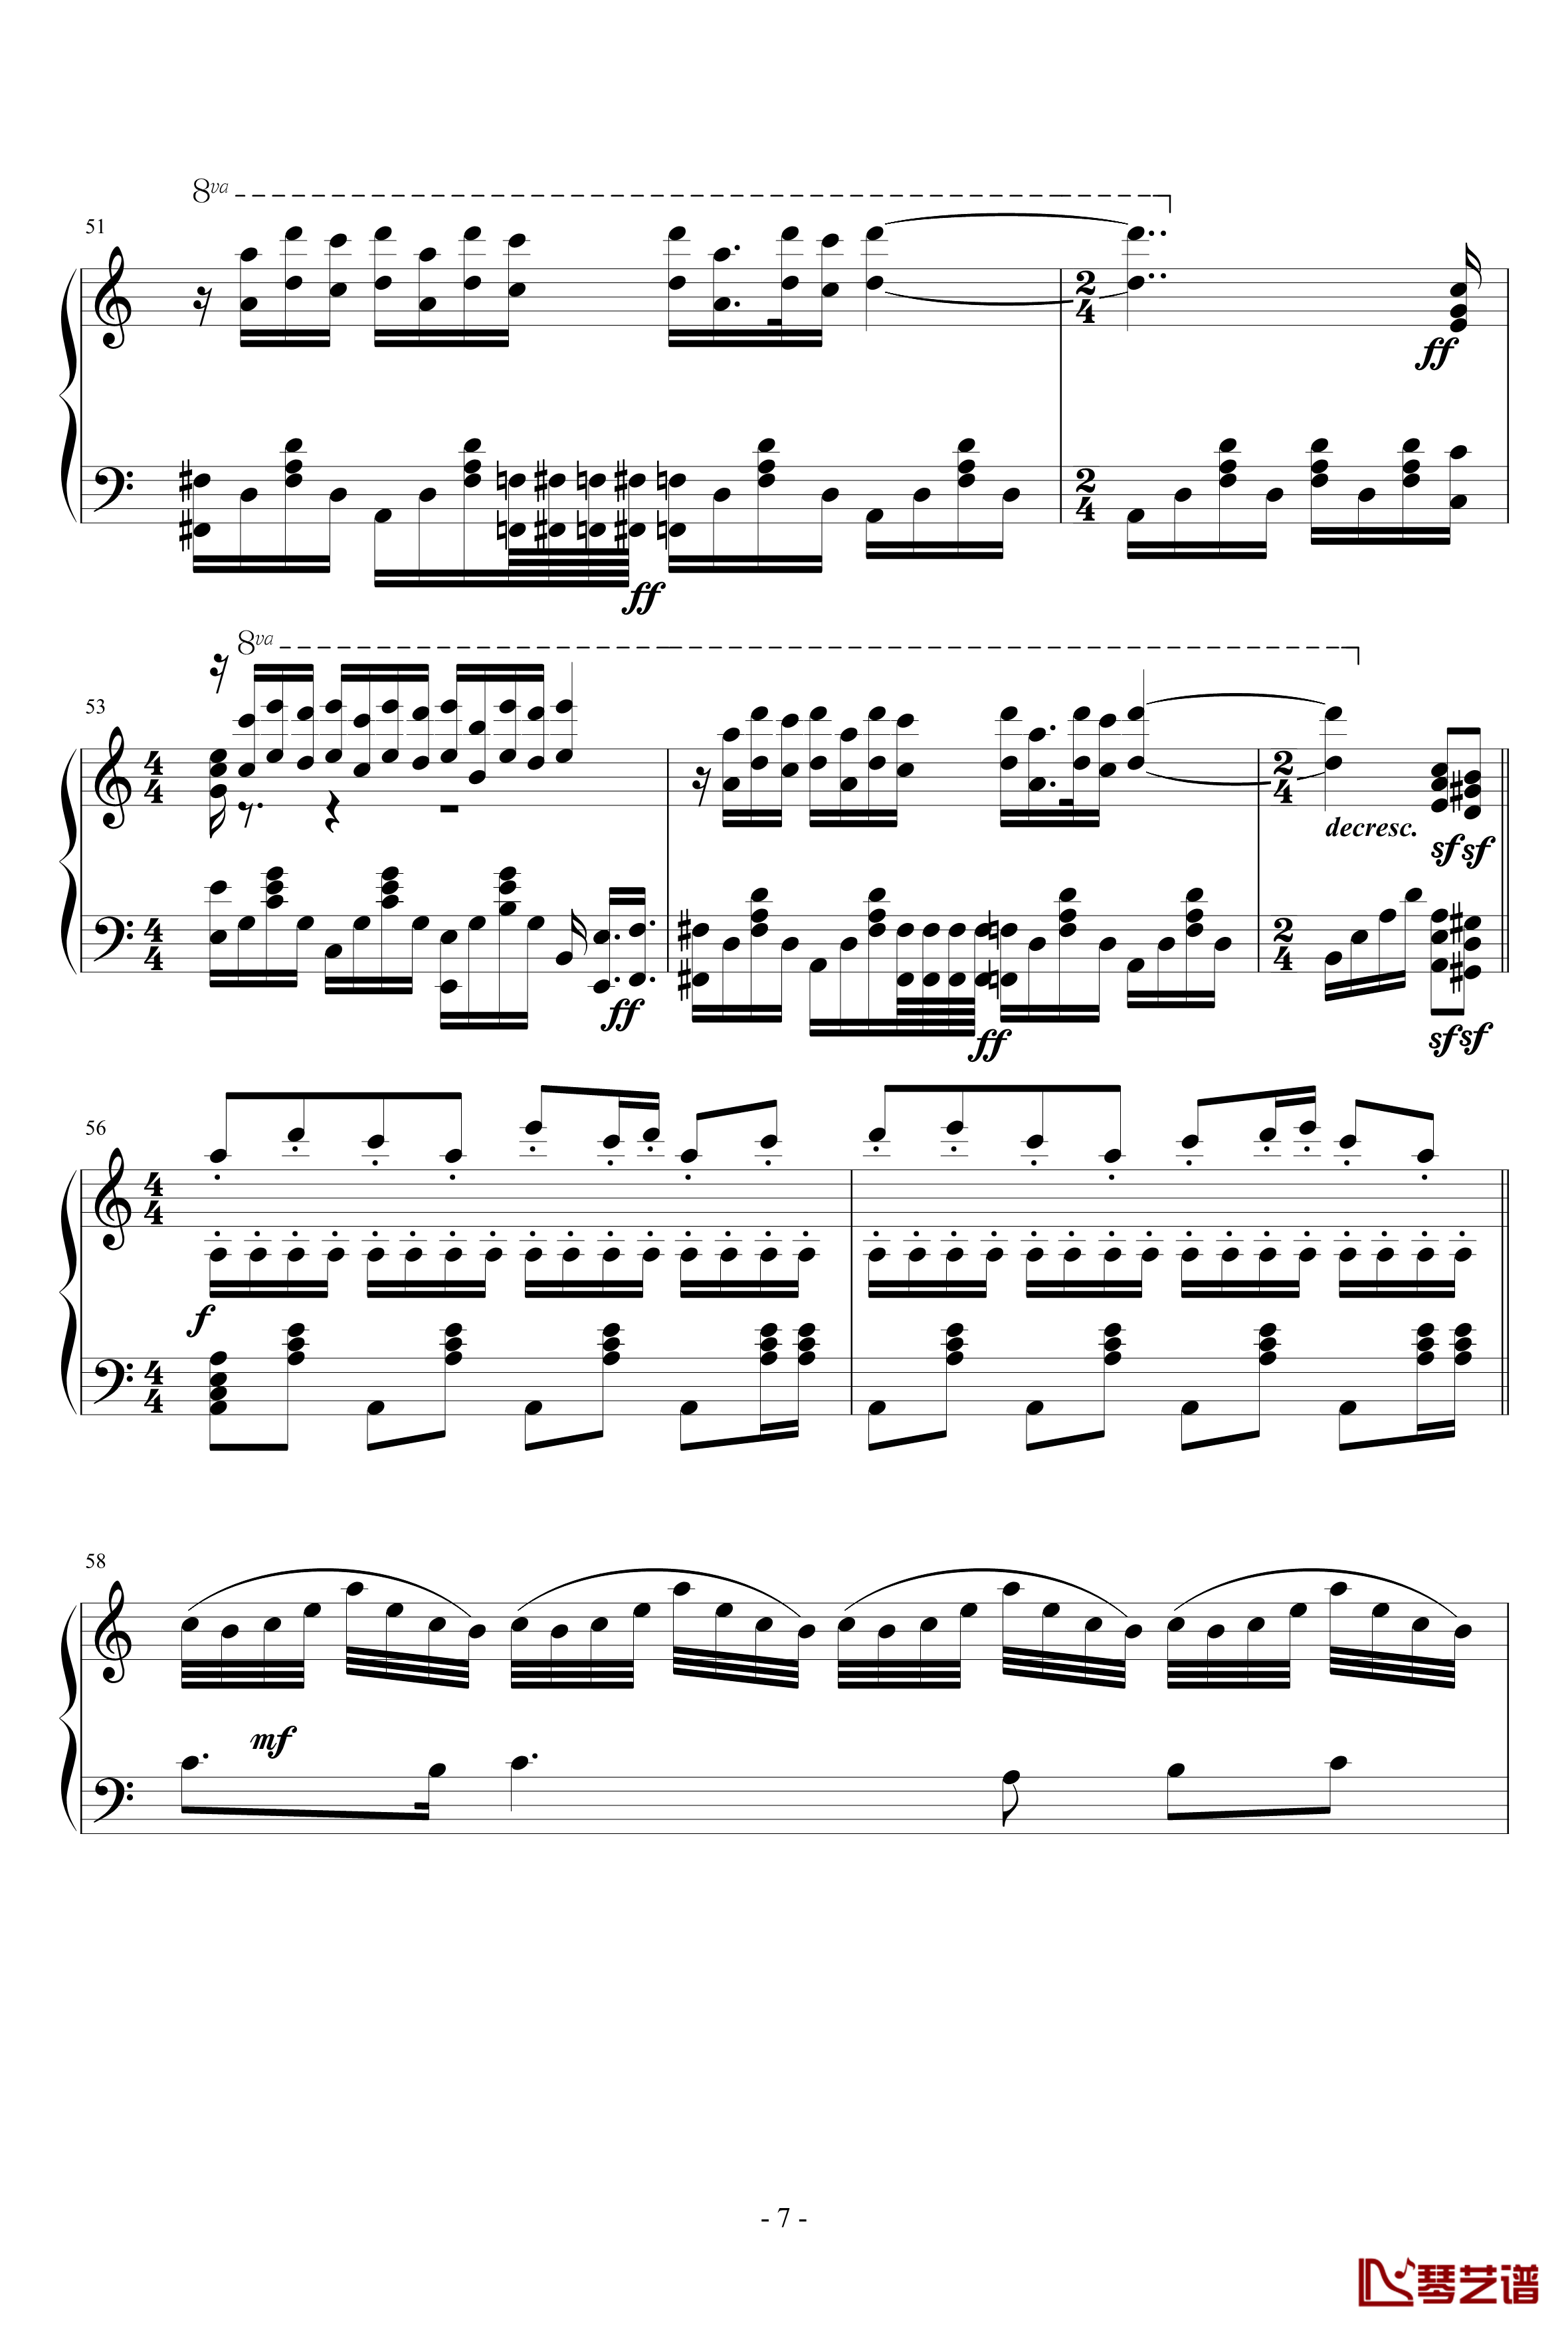 La Ballata Di Sacco E Vanzetti钢琴谱-死刑台的旋律主题曲-Ennio Morricone7